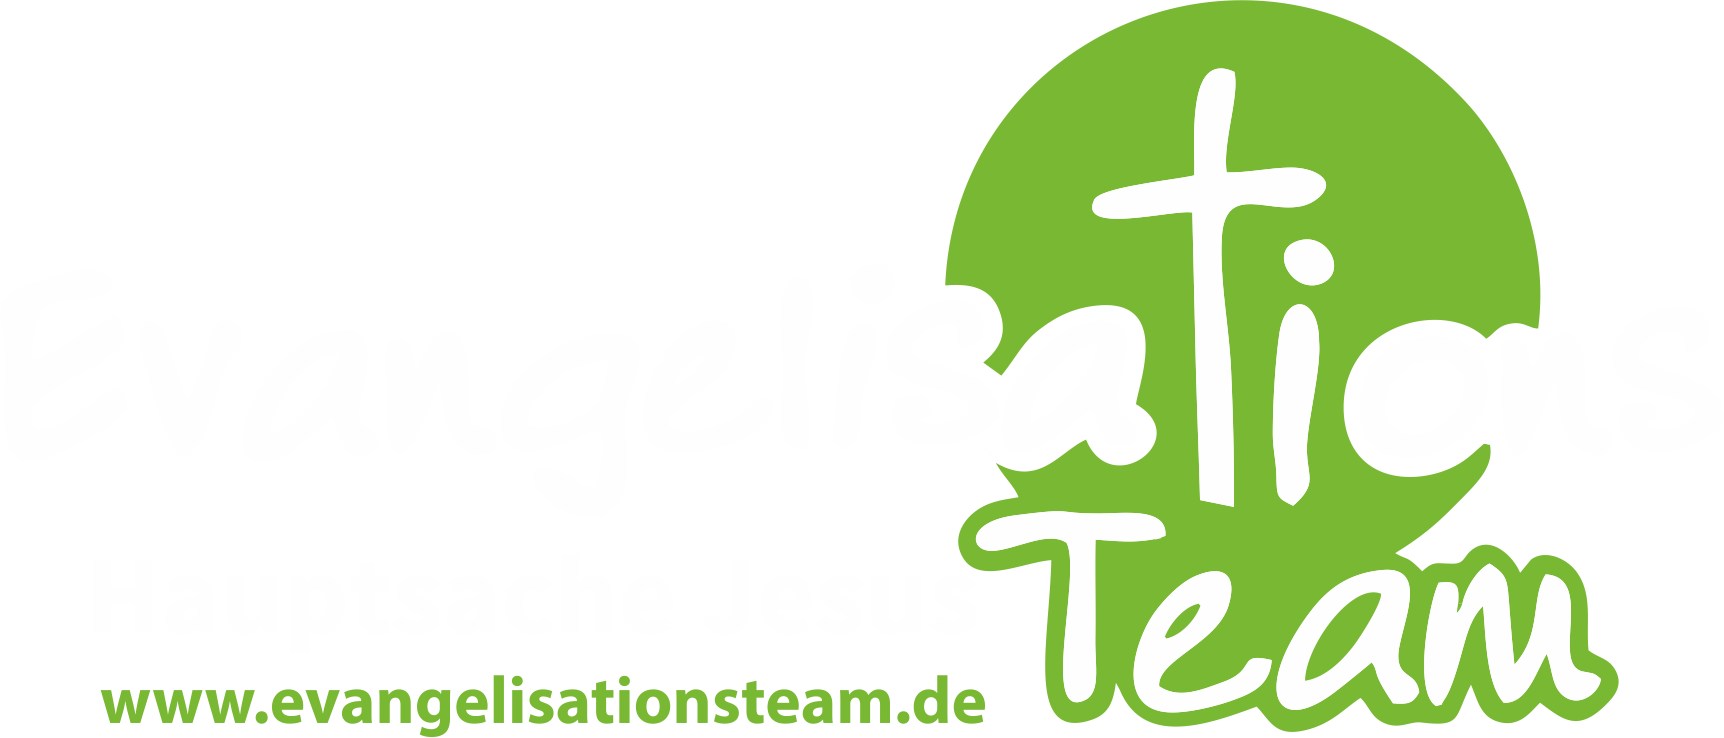 Logo Evangelisationsteam